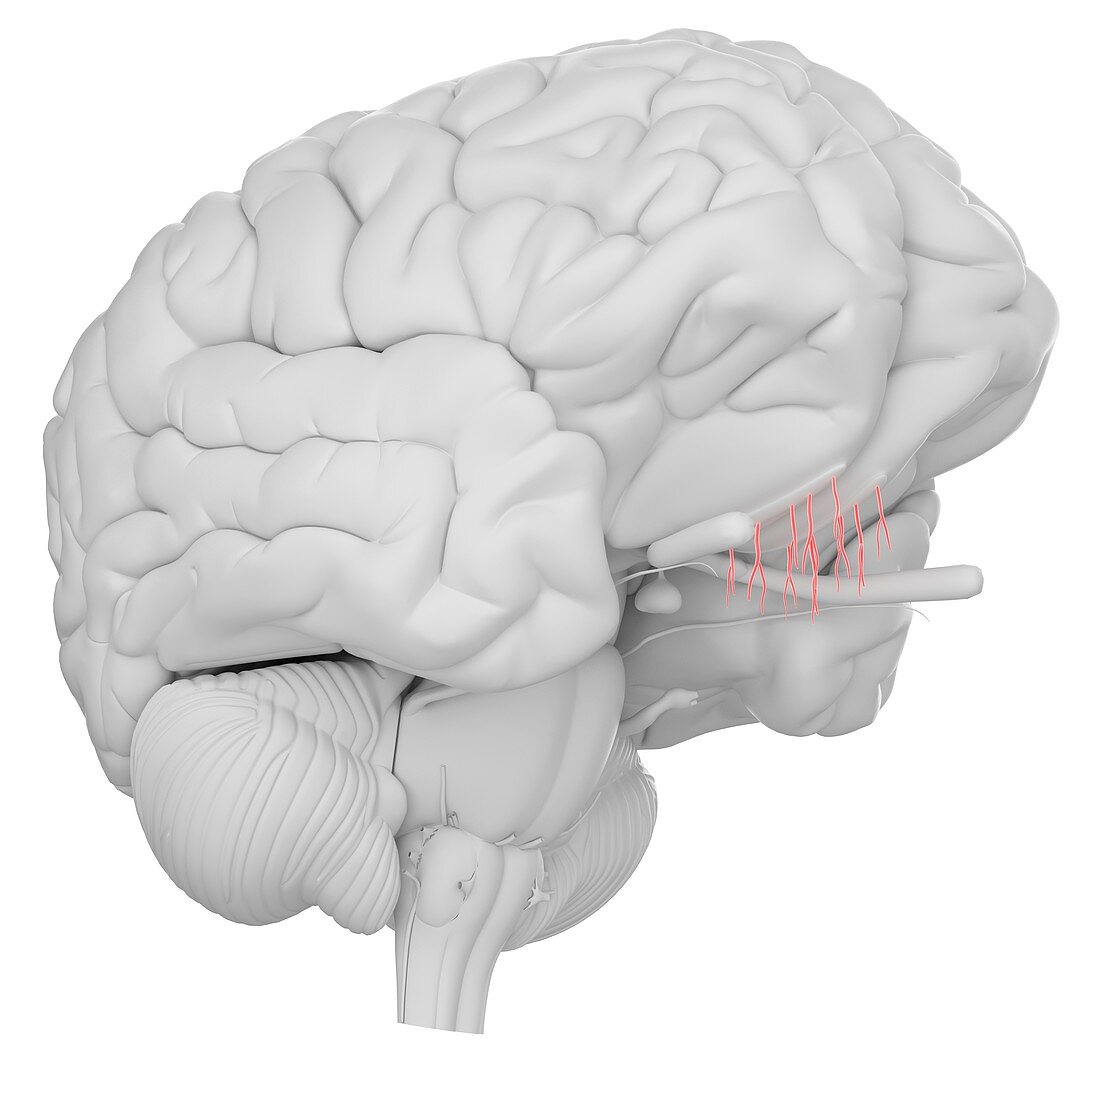 Human brain olfactory nerve, illustration